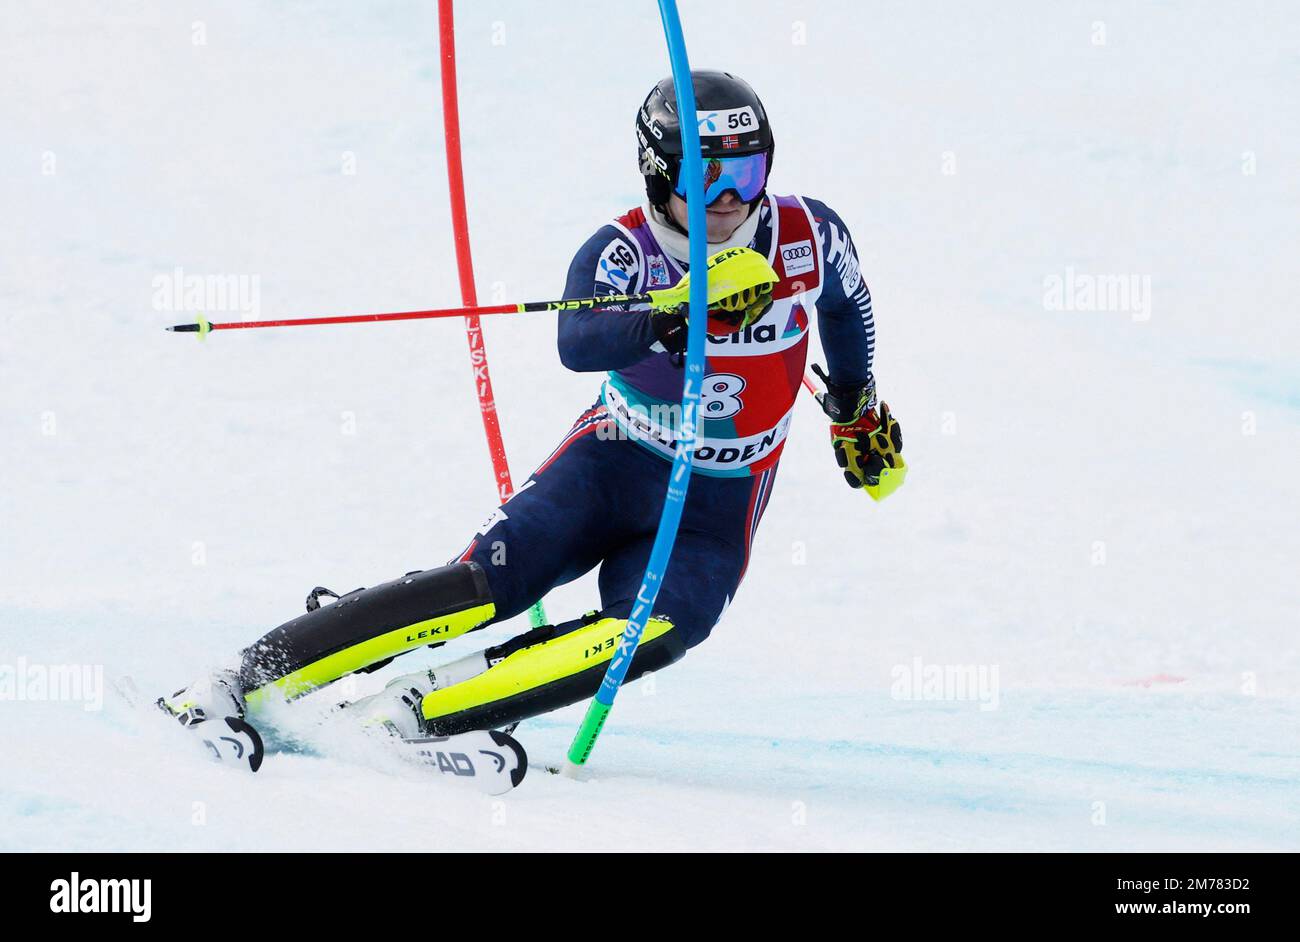 Ski alpin - FIS coupe du monde de ski alpin - Slalom masculin - Adelboden, Suisse - 8 janvier 2023 Norvège Atle lie McGrath en action REUTERS/Stefan Wermuth Banque D'Images